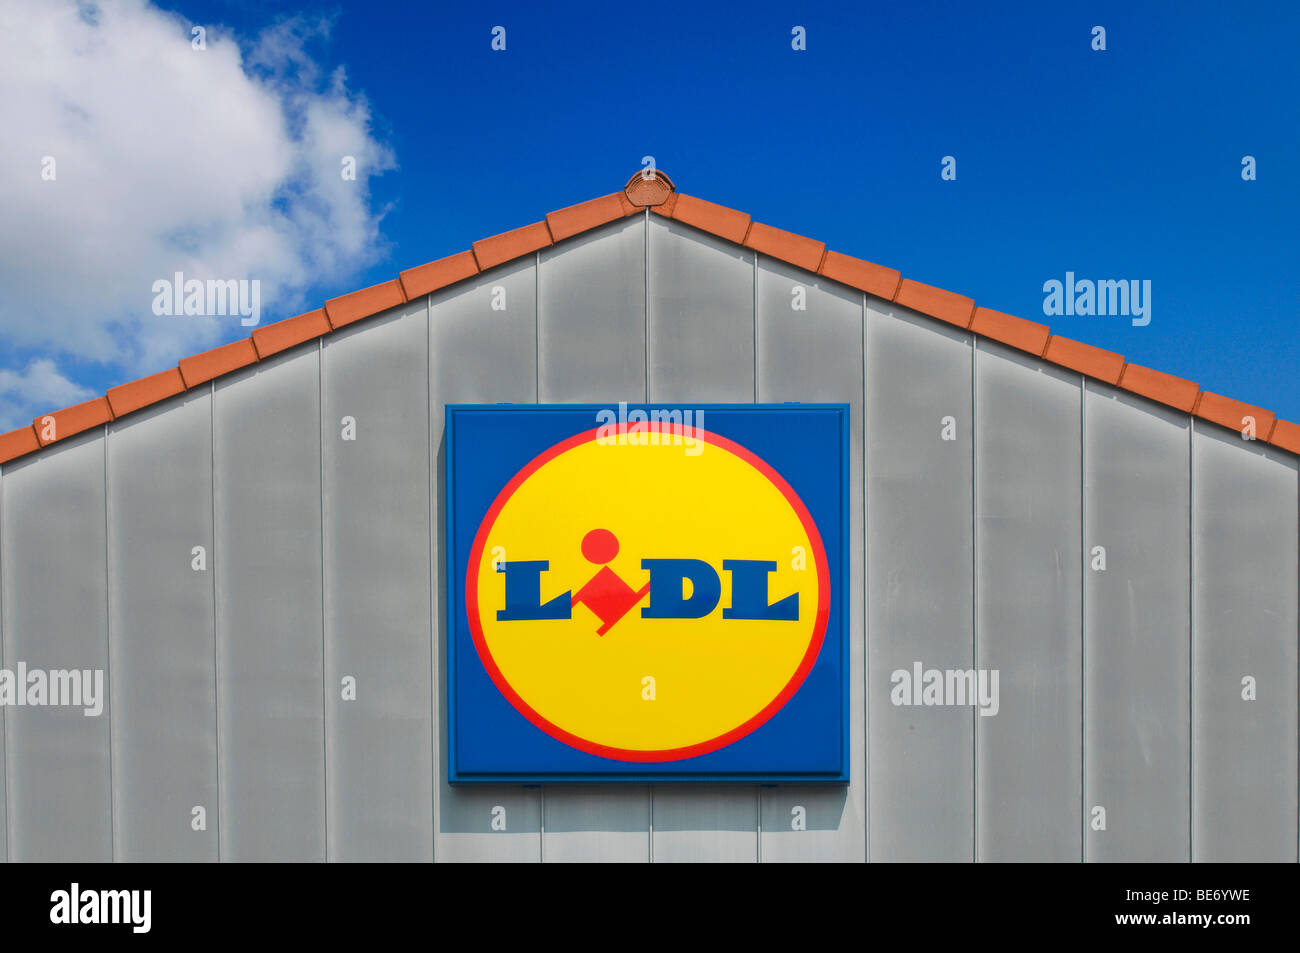 si puedes Accidentalmente Comunismo Cresta del techo de un almacén con el Lidl Lidl logo Fotografía de stock -  Alamy